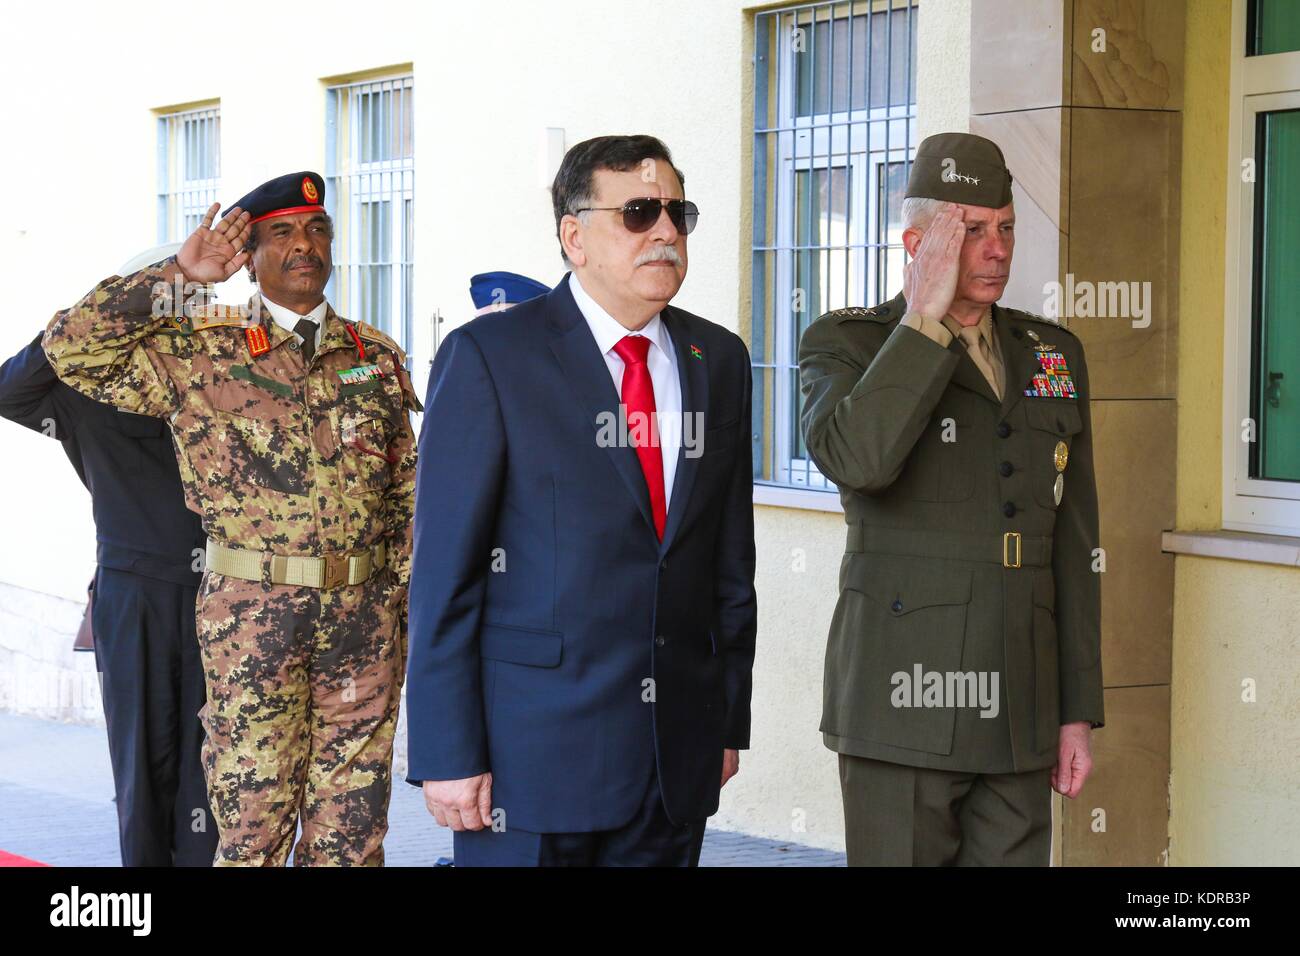 El Primer Ministro libio Fayez al-Sarraj (izquierda) y la infantería de marina de EE.UU comando África Comandante Thomas waldhauser hacer distinciones antes de una reunión en la sede del comando áfrica de EE.UU. Abril 5, 2017 en Stuttgart, Alemania. Foto de stock